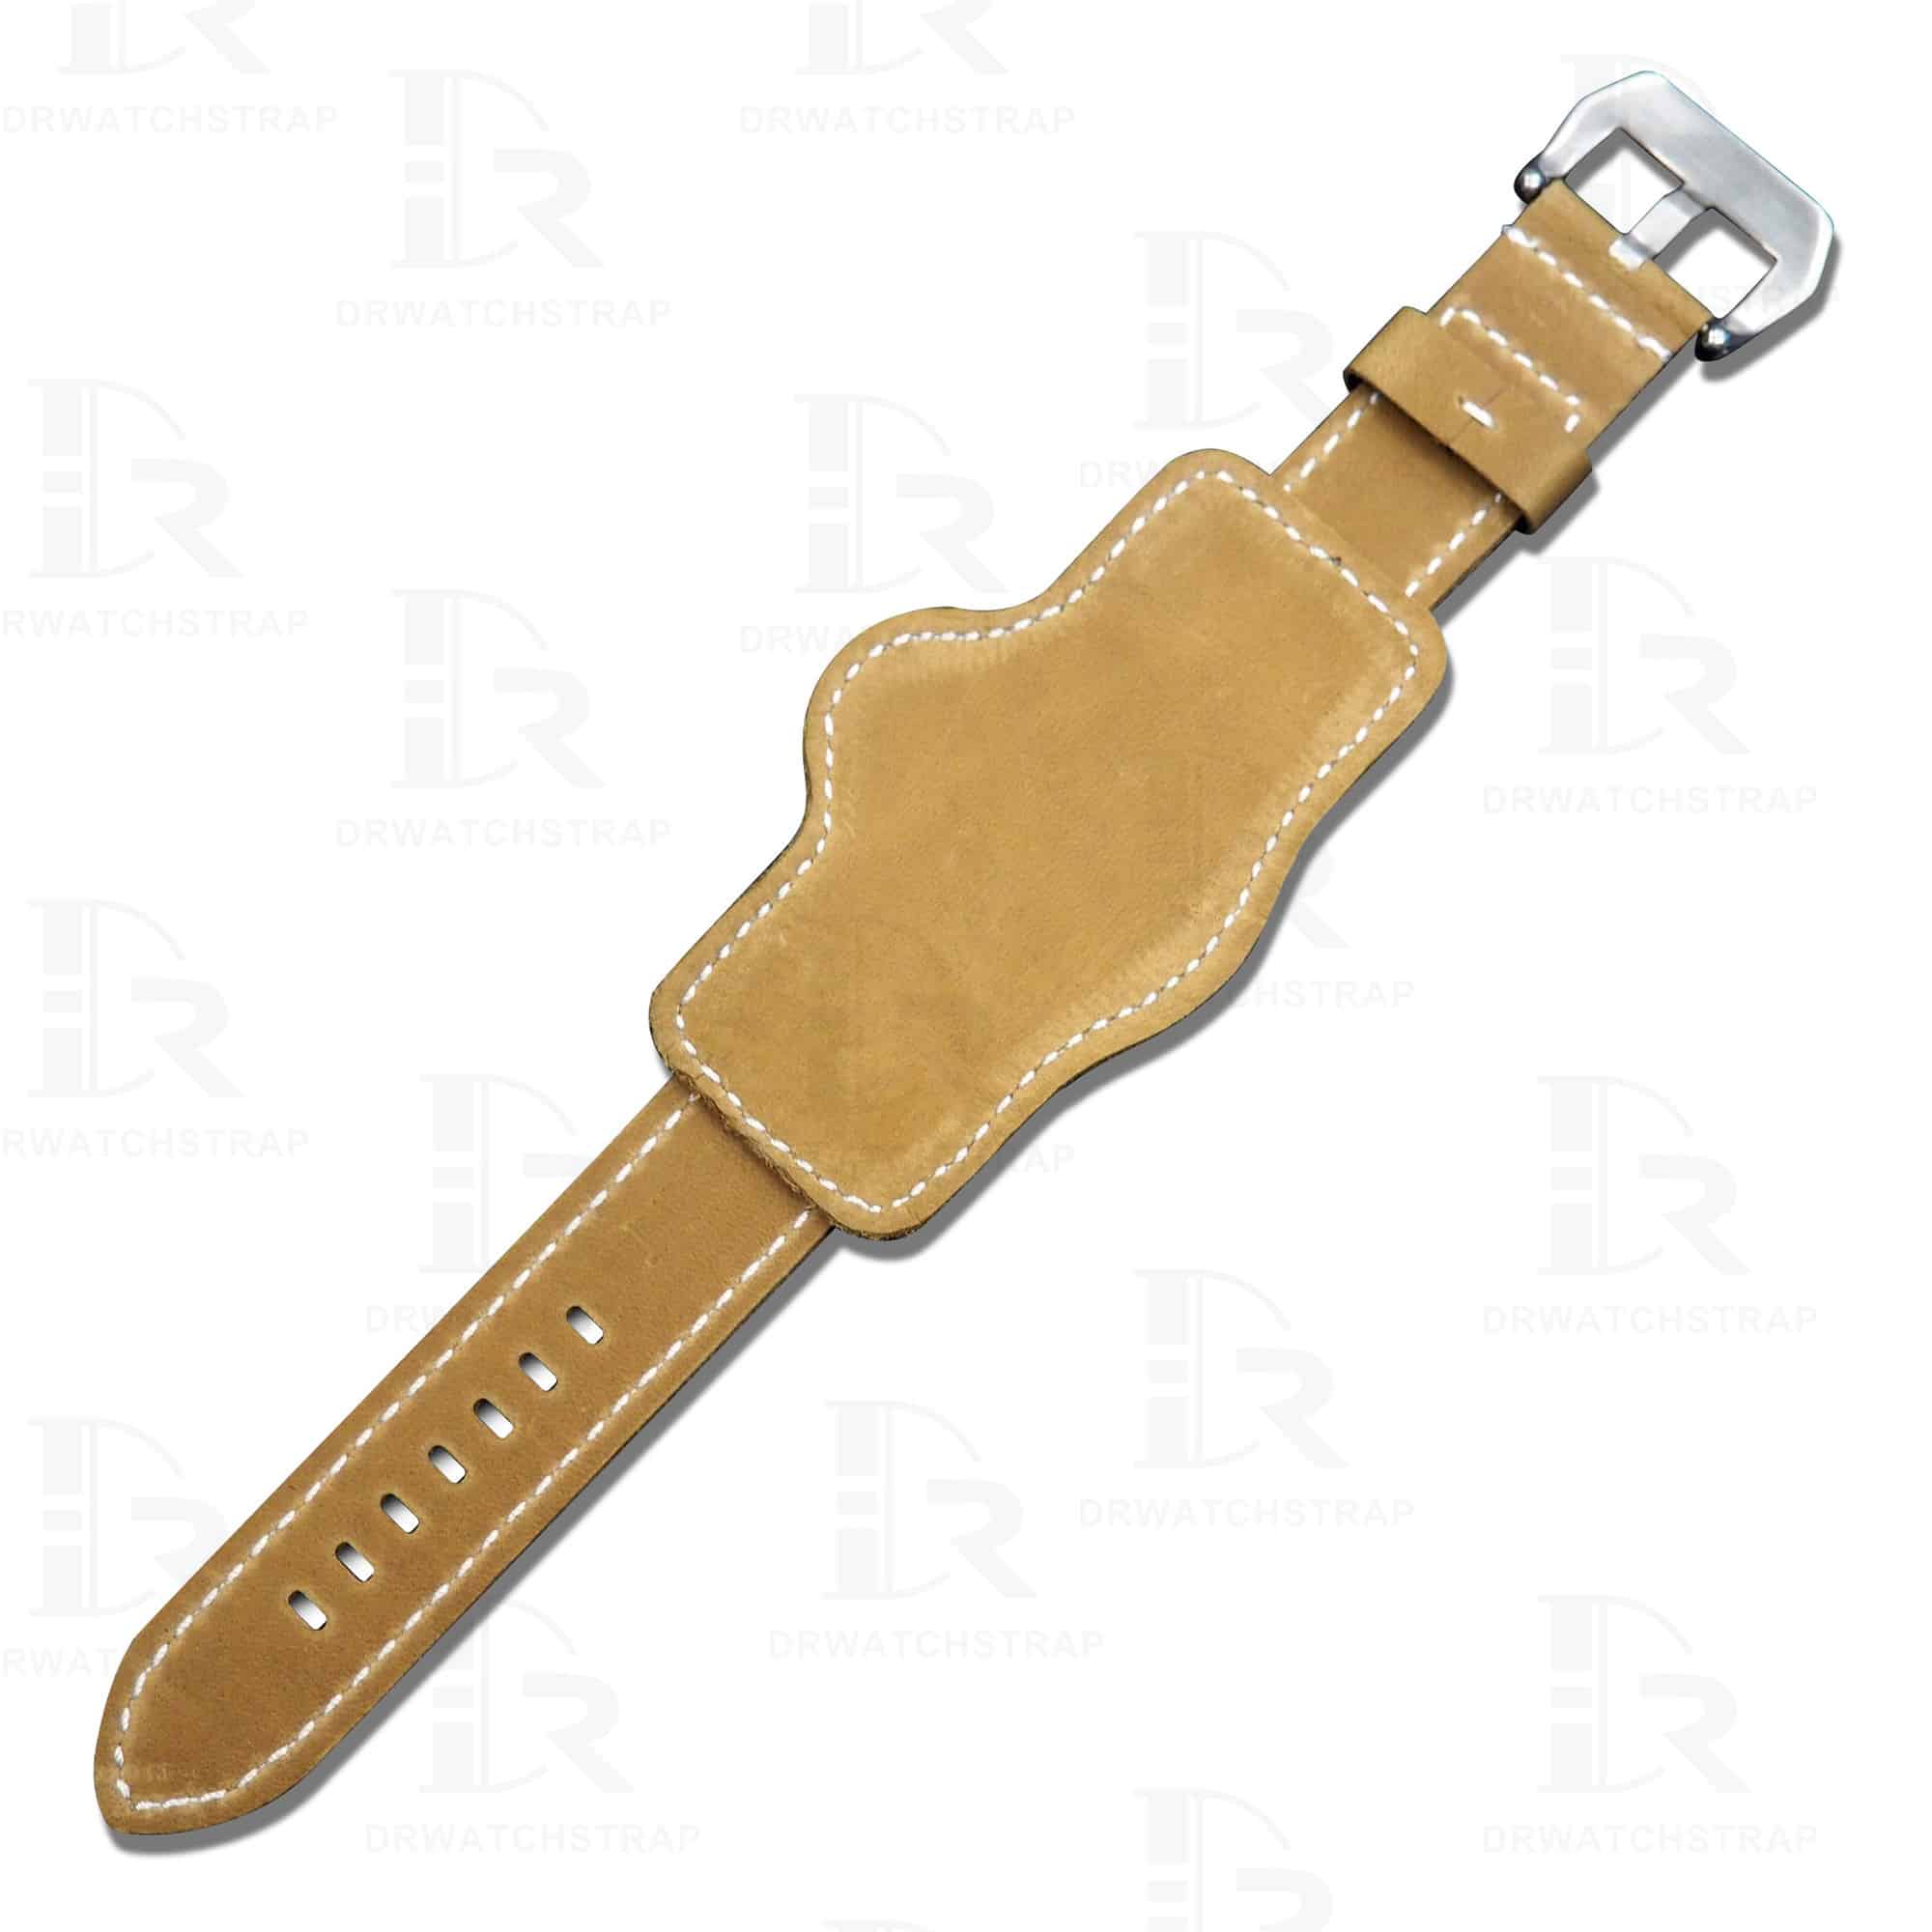 Aftermarket handmade brown Panerai suede calfskin leather watch bund Strap 22mm 24mm